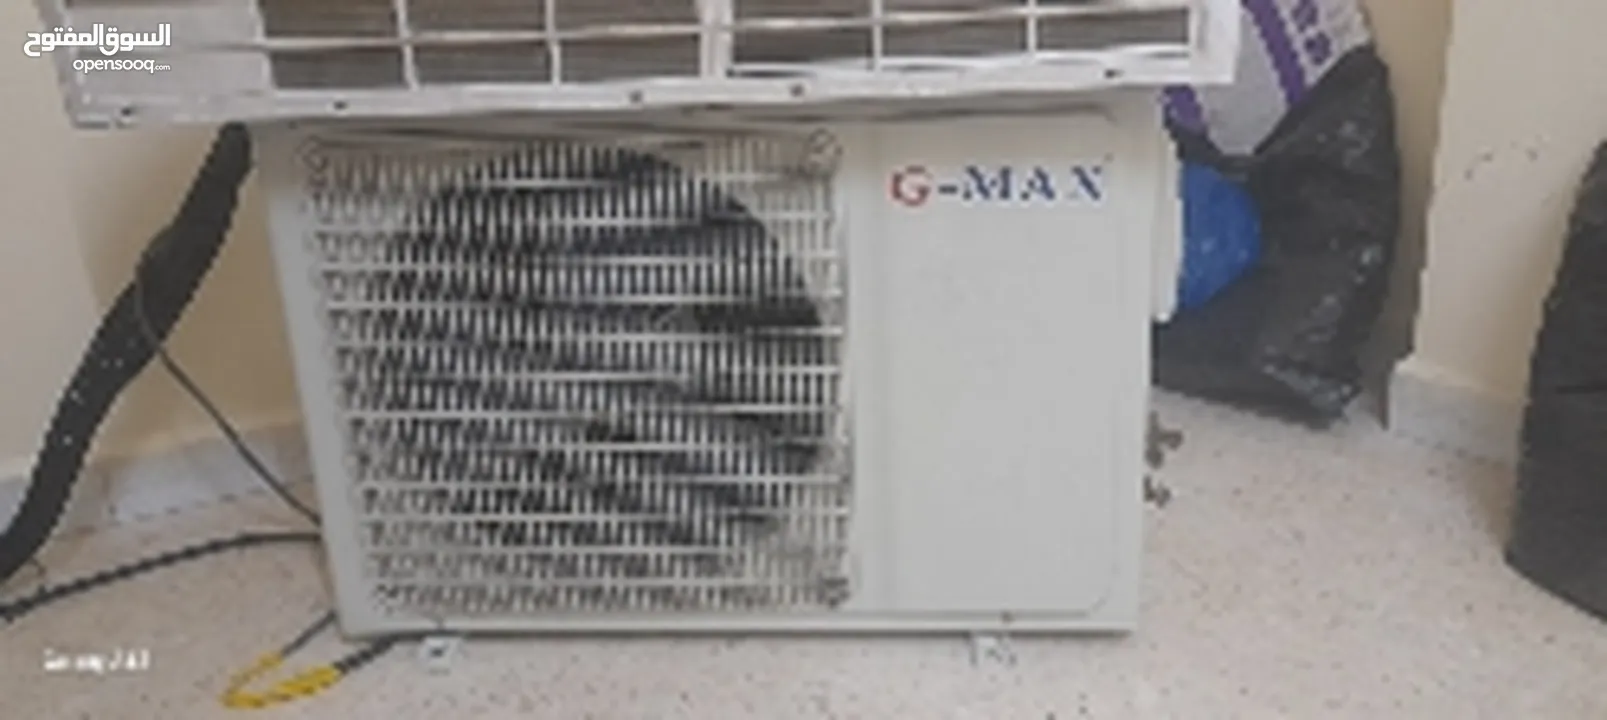 مكيف G-MAXحامي بارد موفر طاقة